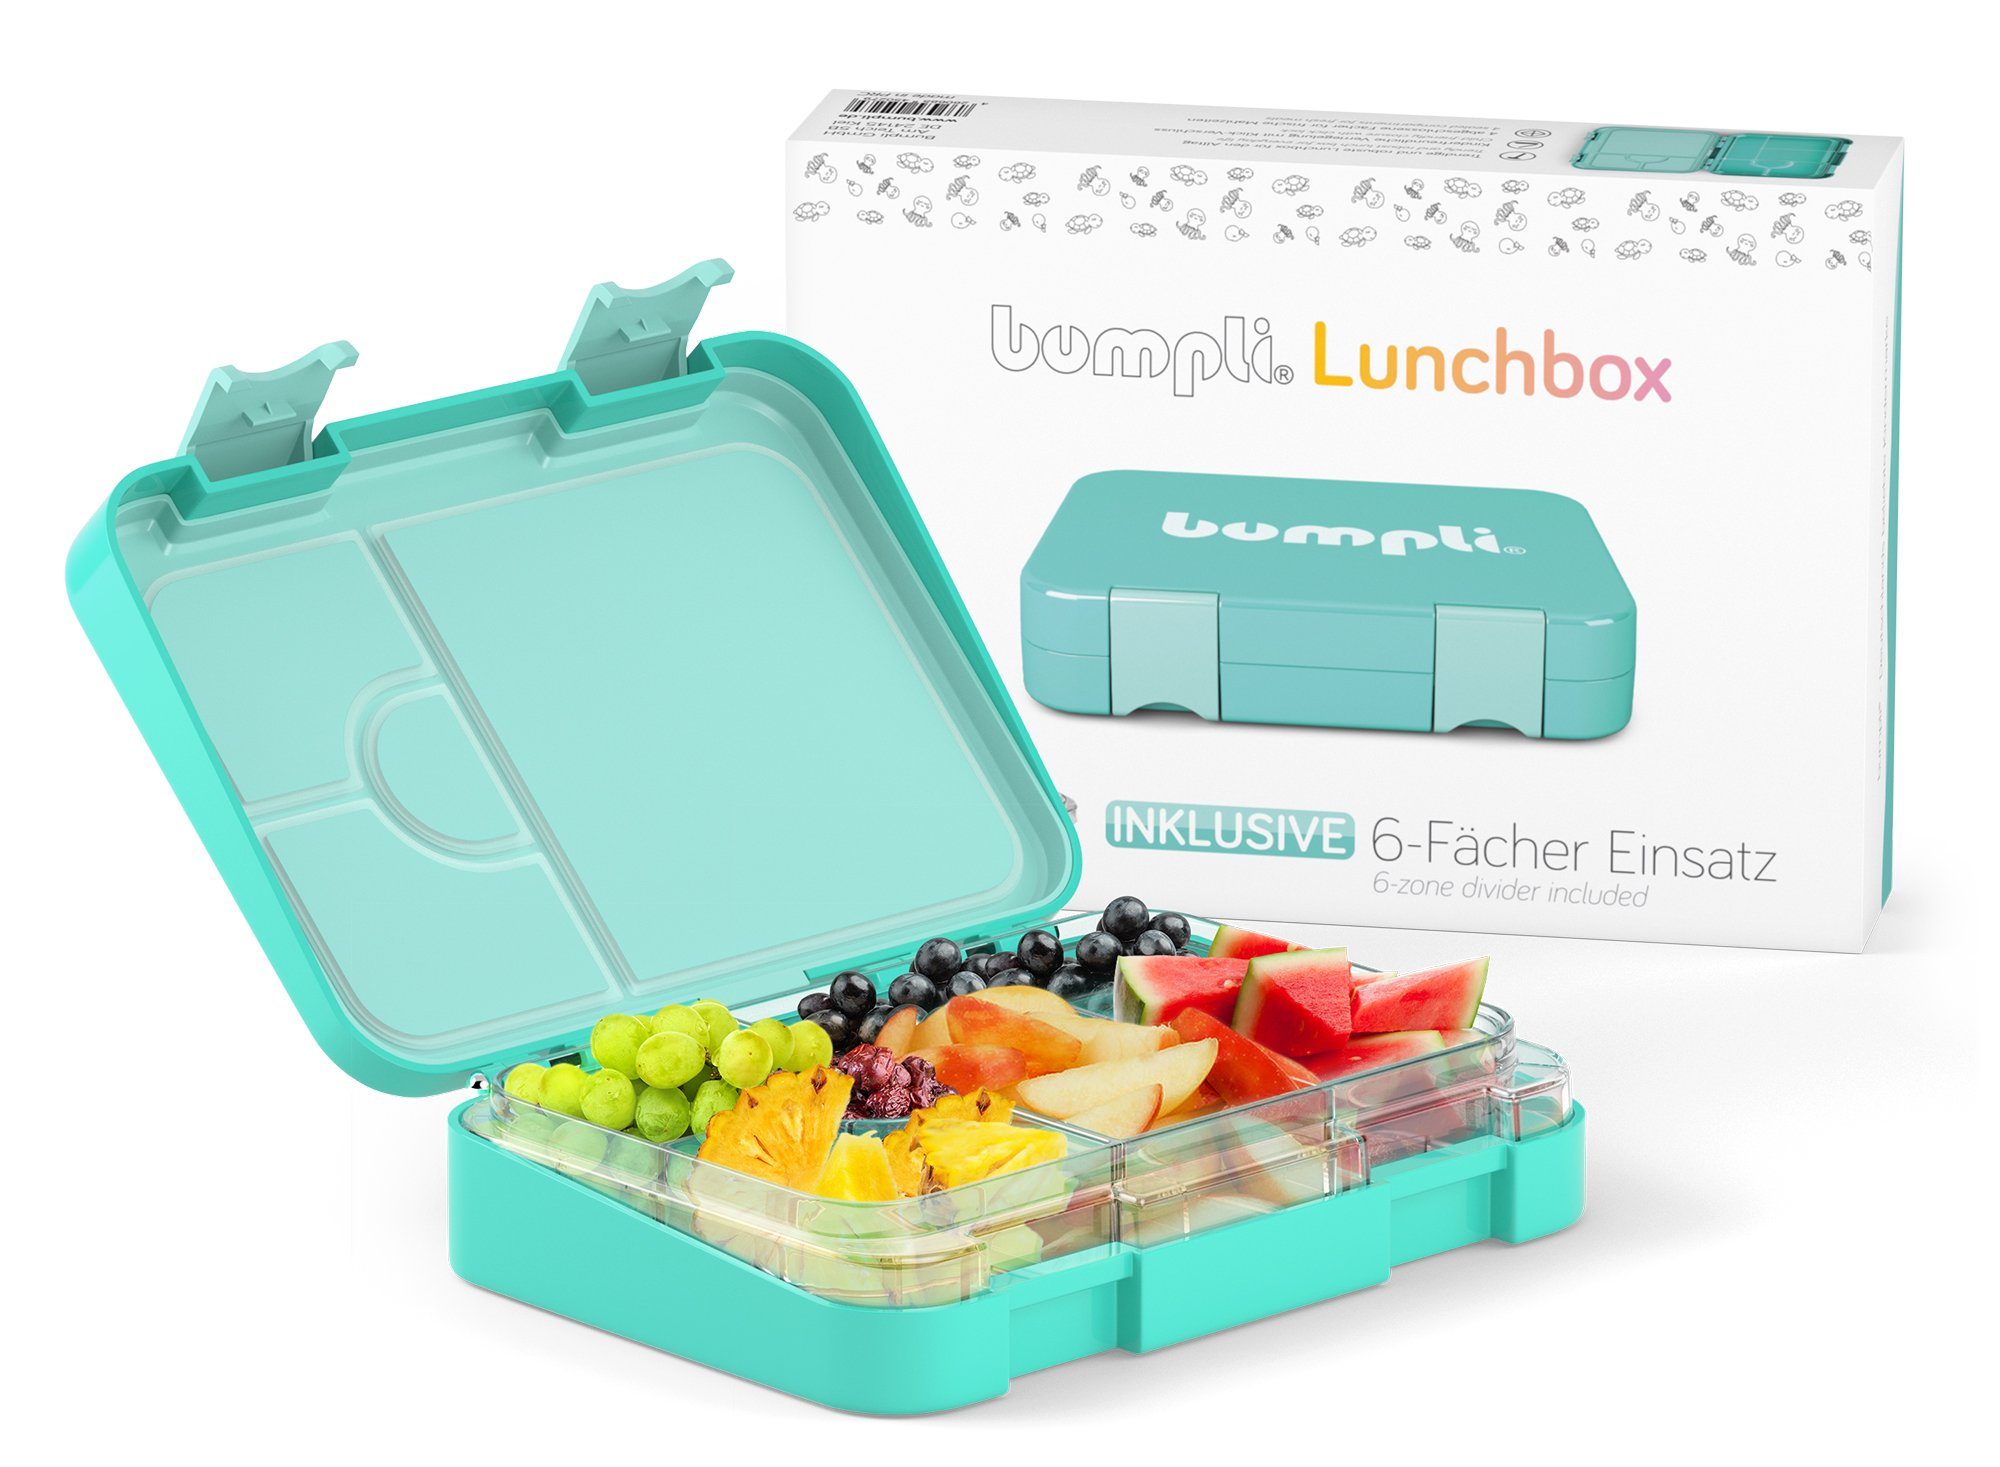 bumpli® Lunchbox Verriegelung & BPA-frei- Kinder Kinderfreundliche Fächer) Brotdose Auslaufsicher Vesperdose, (6 mint Brotbüchse, Tritan